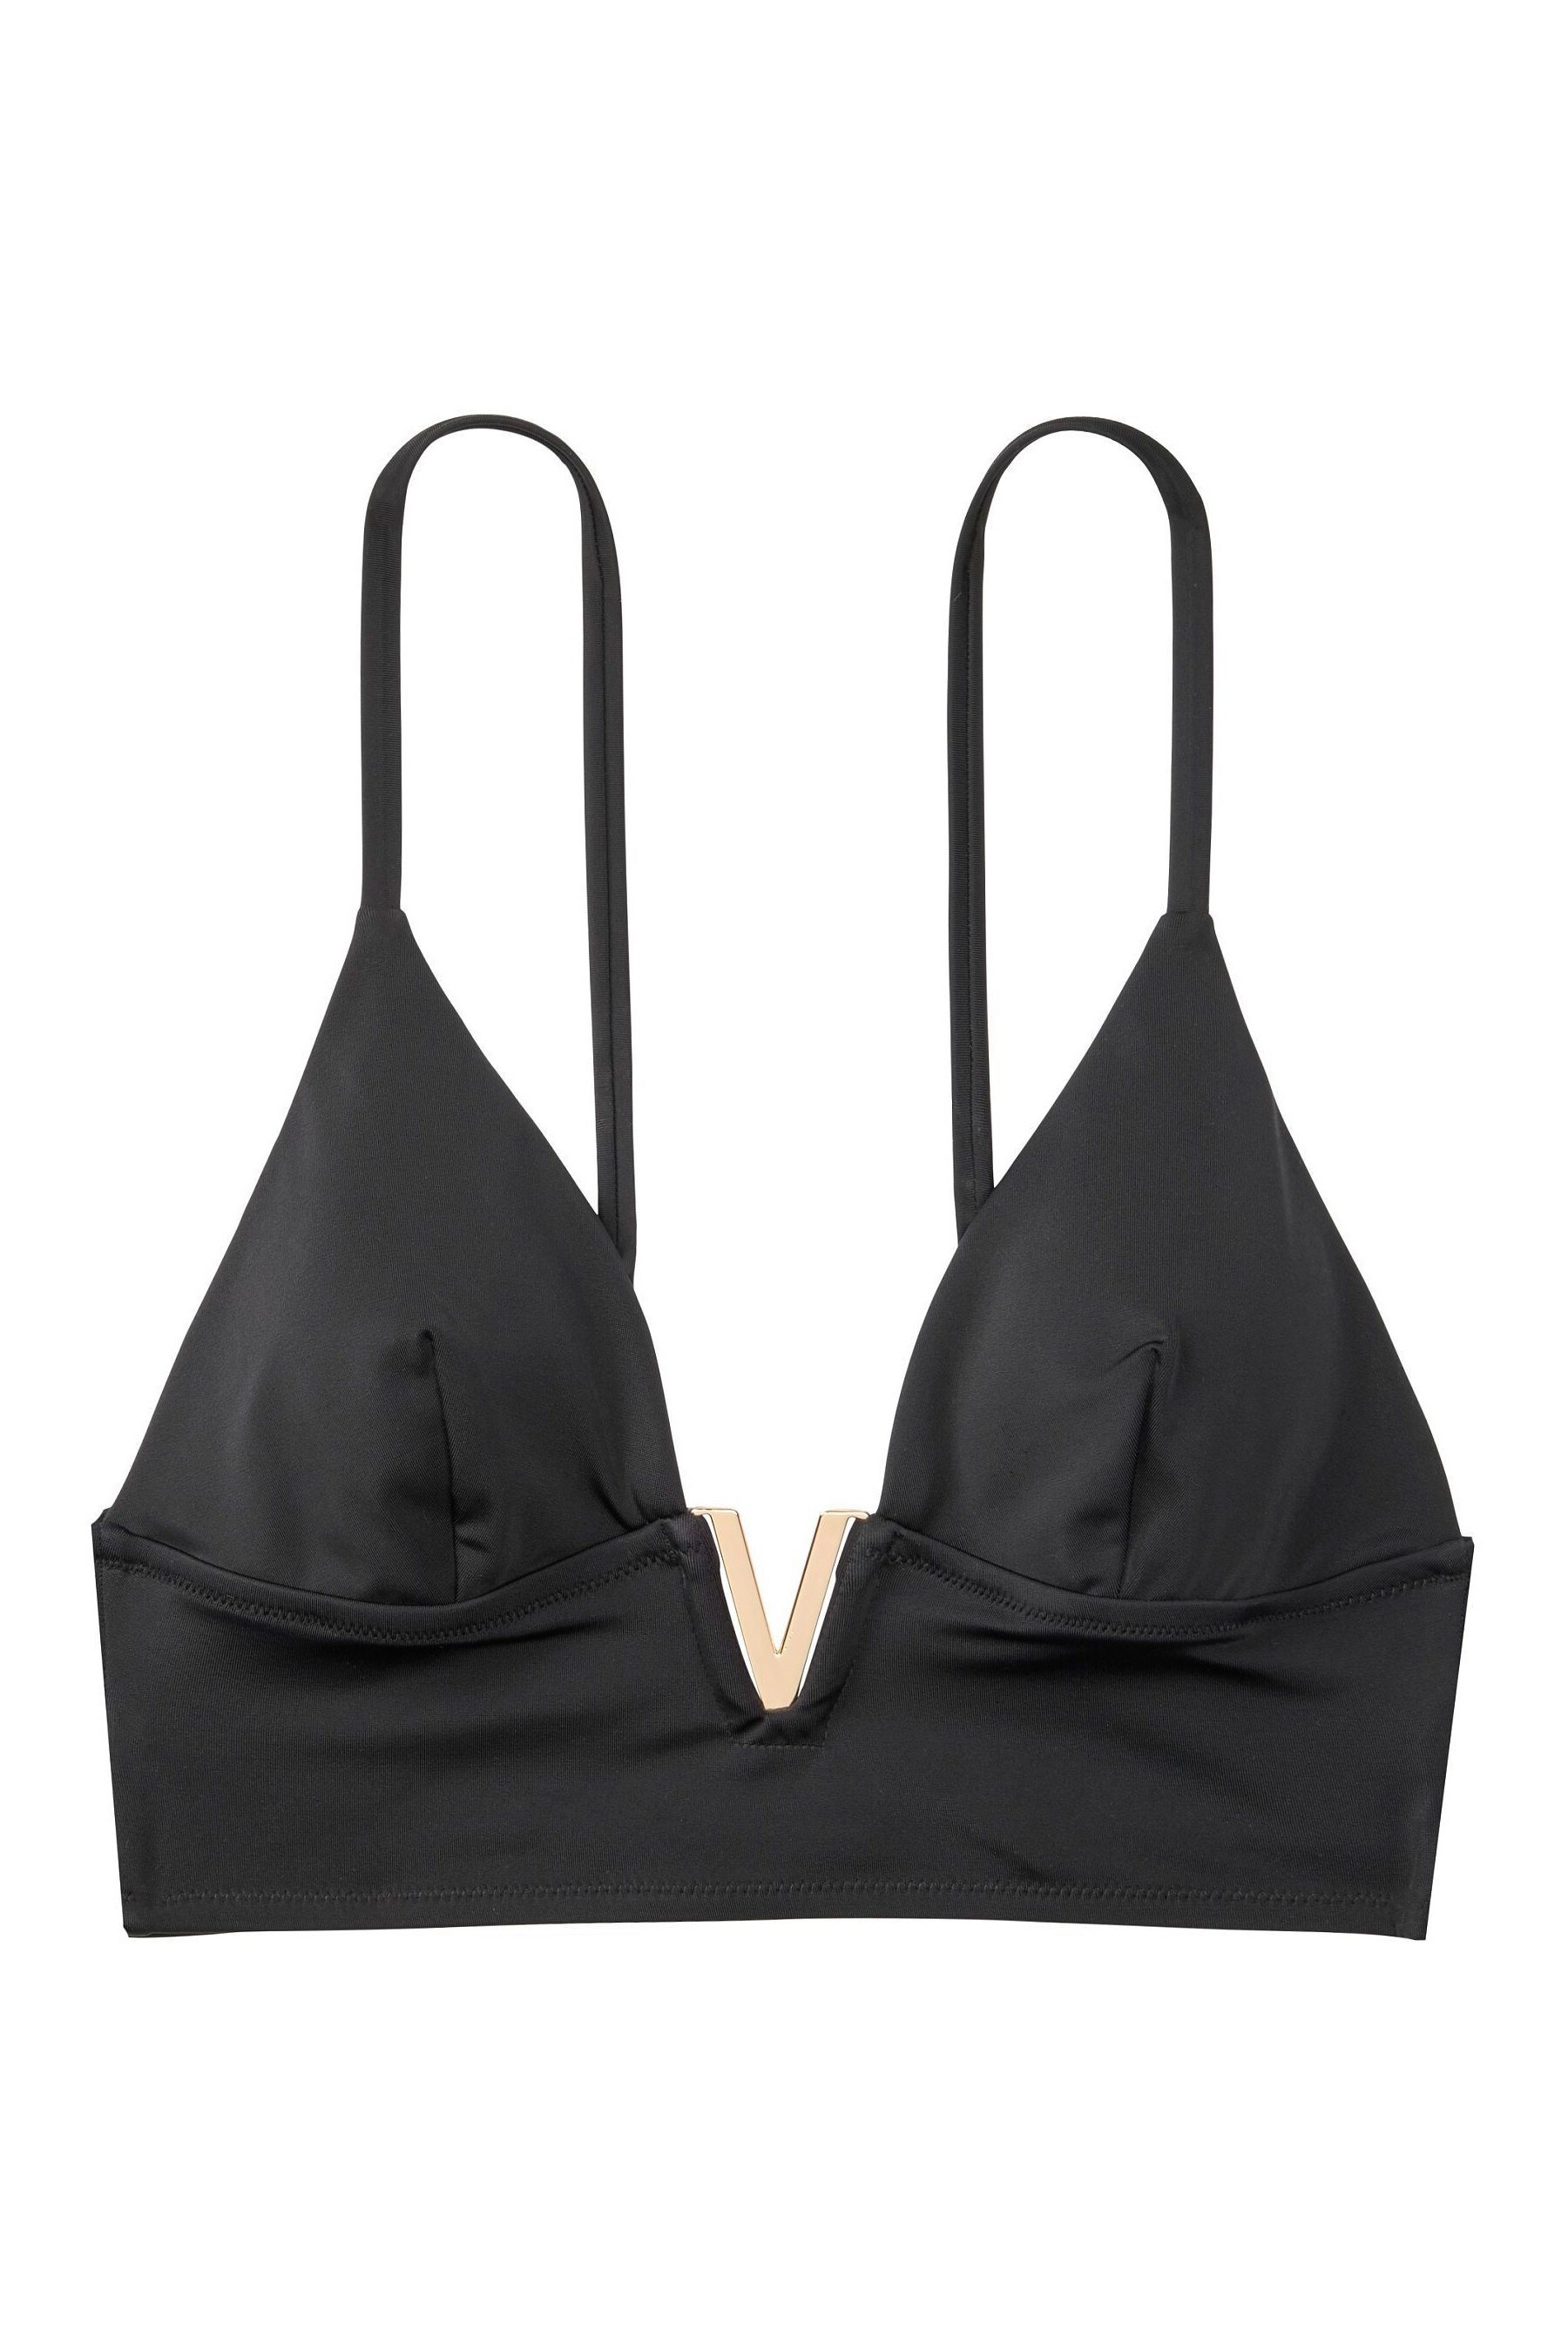 Buy Victoria's Secret Monaco V-Hardware Bikini Top from the Next UK ...